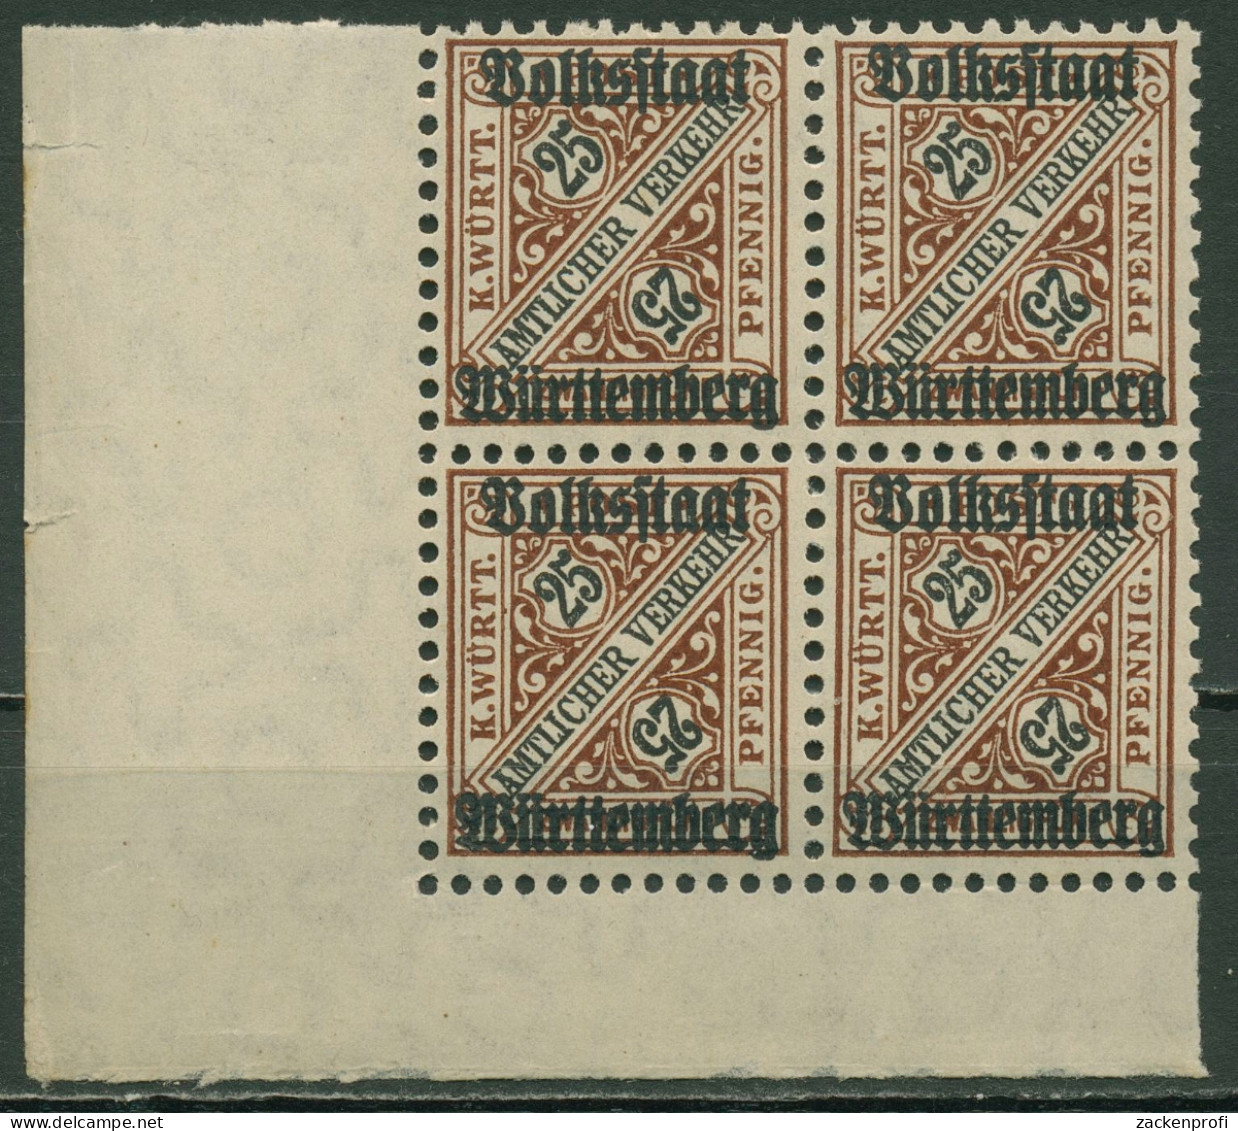 Württemberg Dienstmarken 1919 Mit Aufdruck 265 4er-Block, Ecke 3 Postfrisch - Postfris